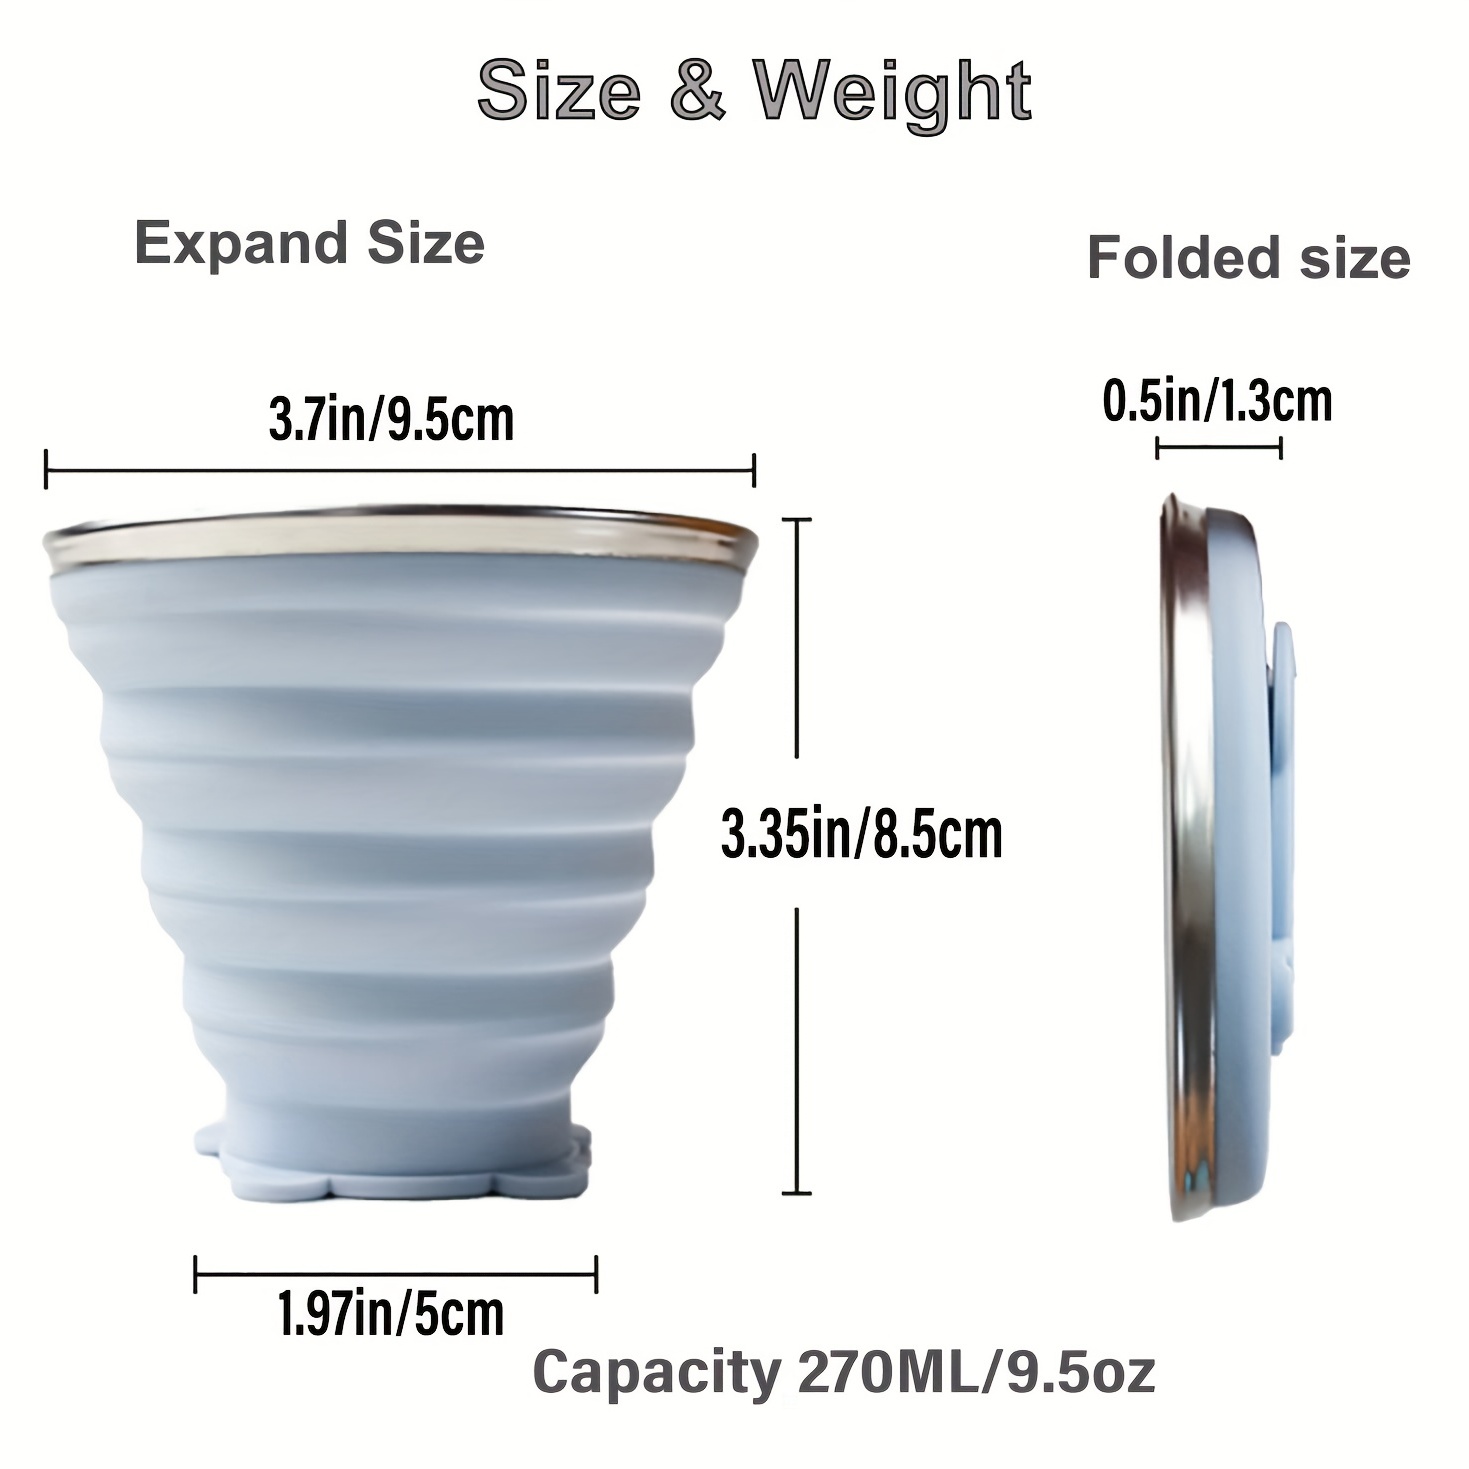 Vaso Plegable De Silicona Con Tapa Portable Reusable 270 Ml - Luegopago